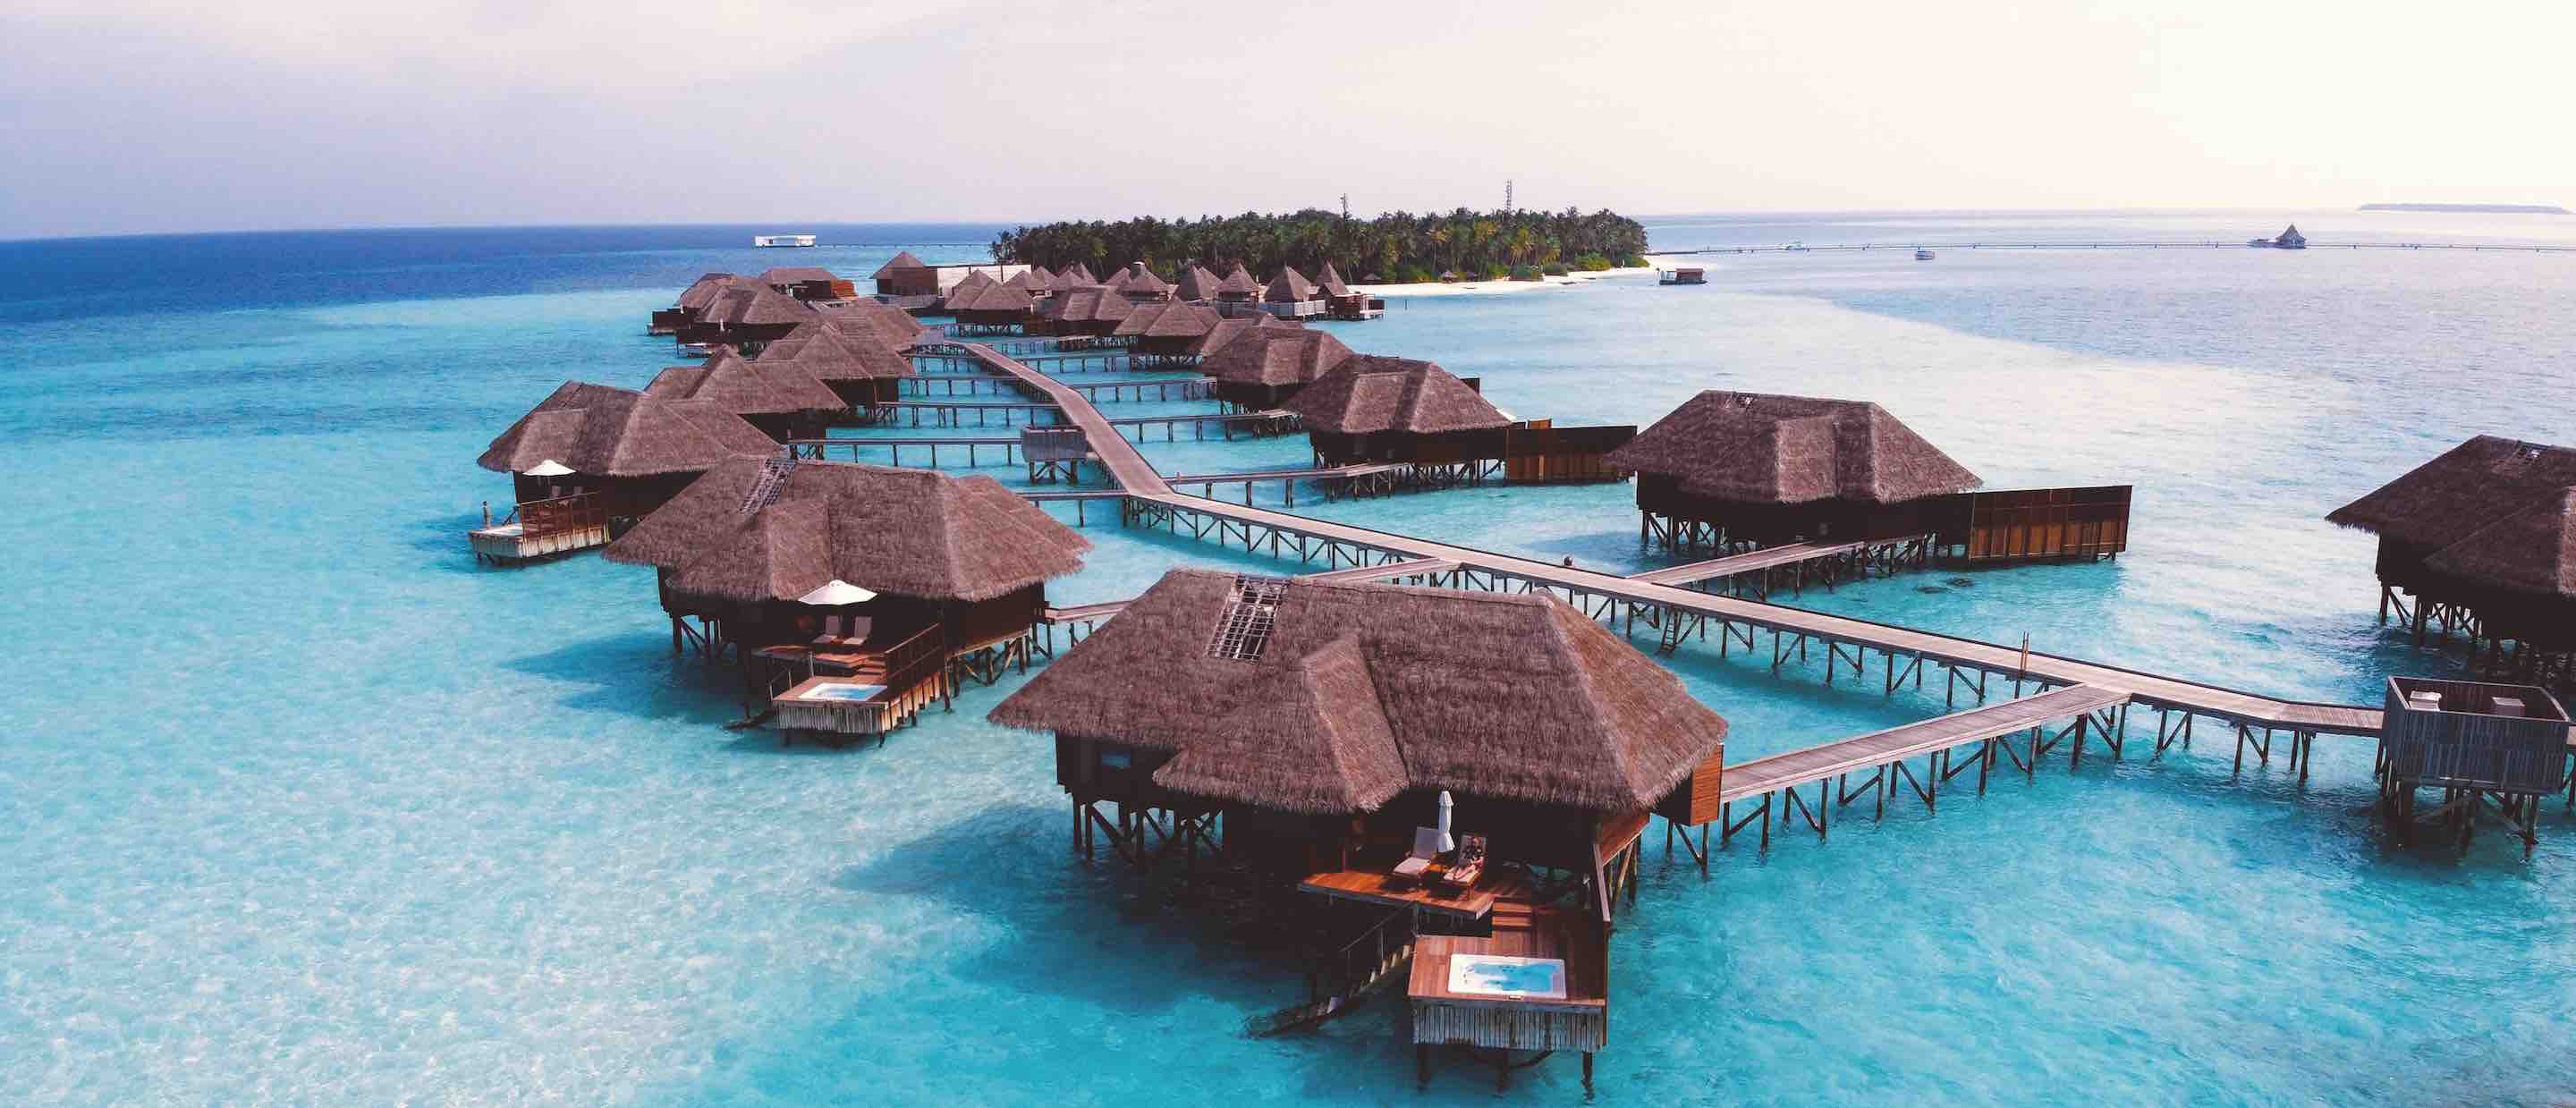 Water villas at the Conrad Maldives resort on Rangali Island, Maldives